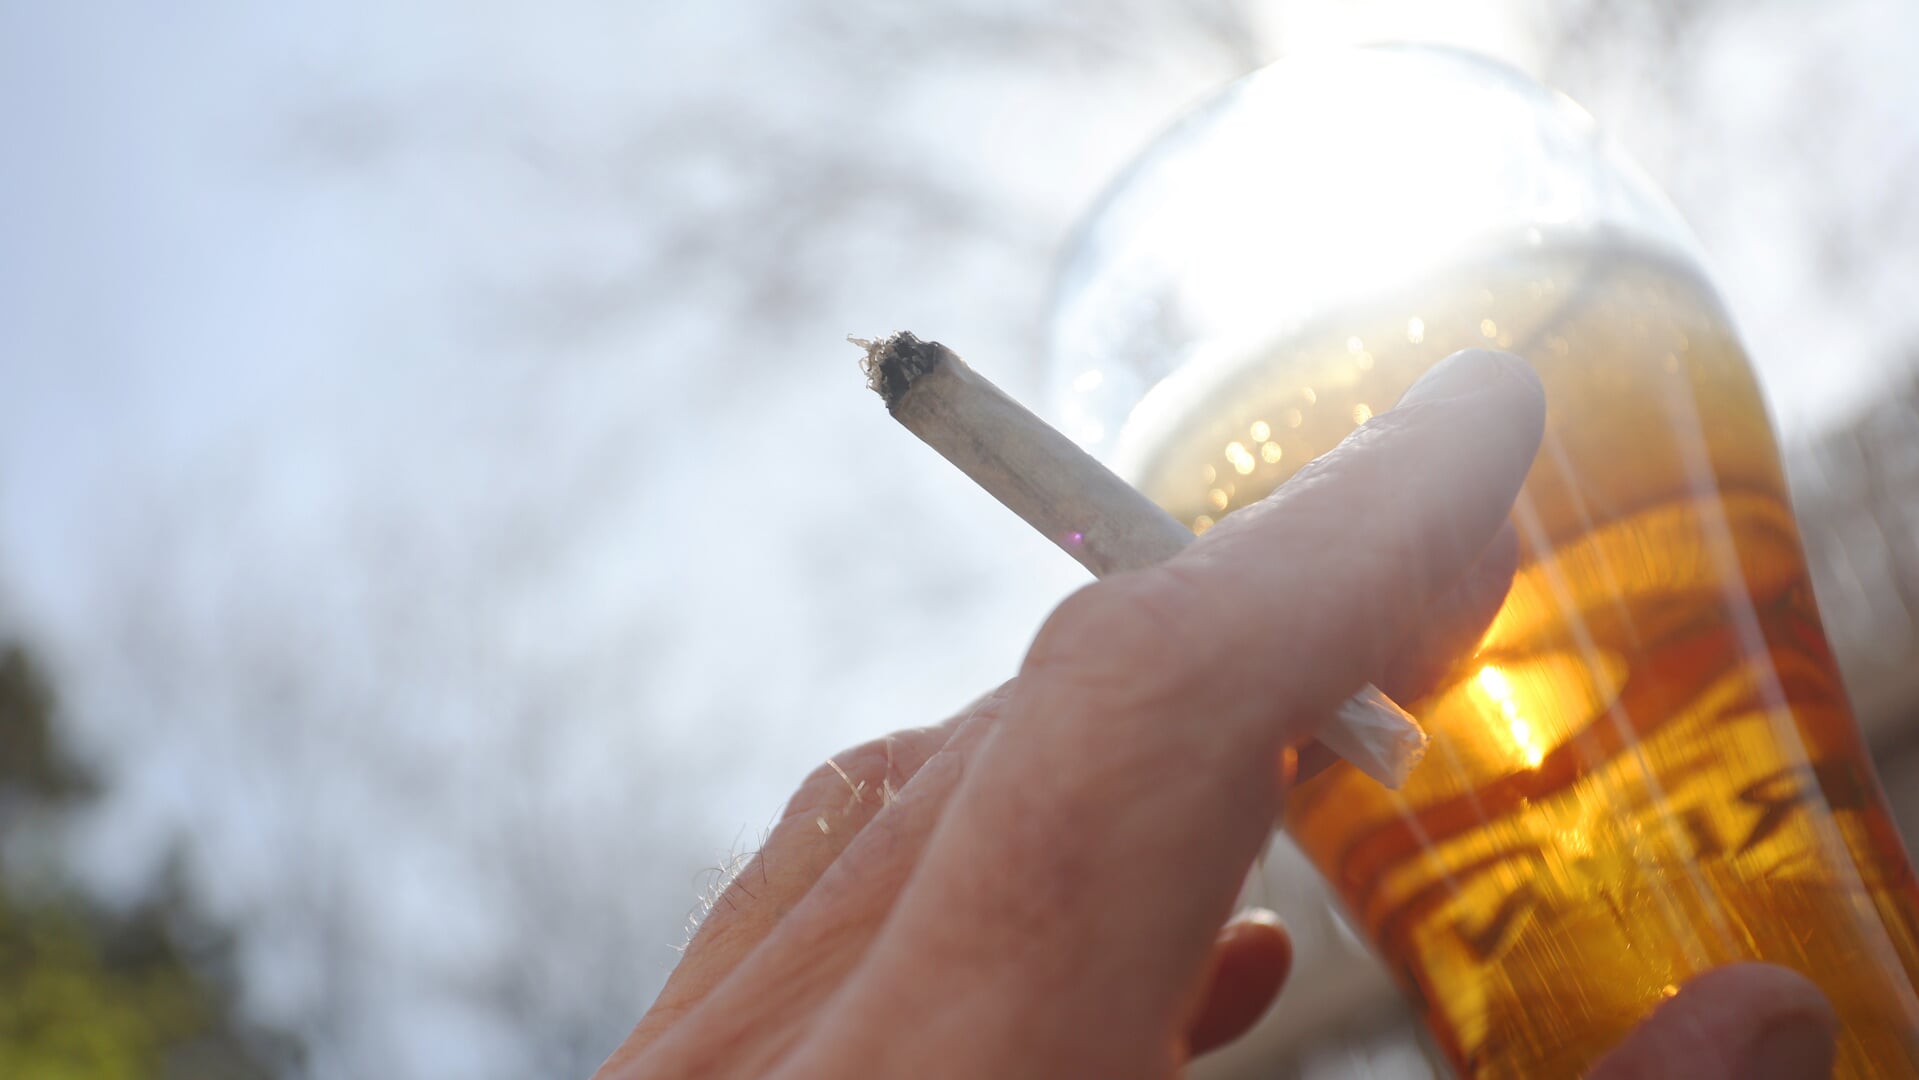 En joint holdes i hånden ved siden af et glas øl. Foto: